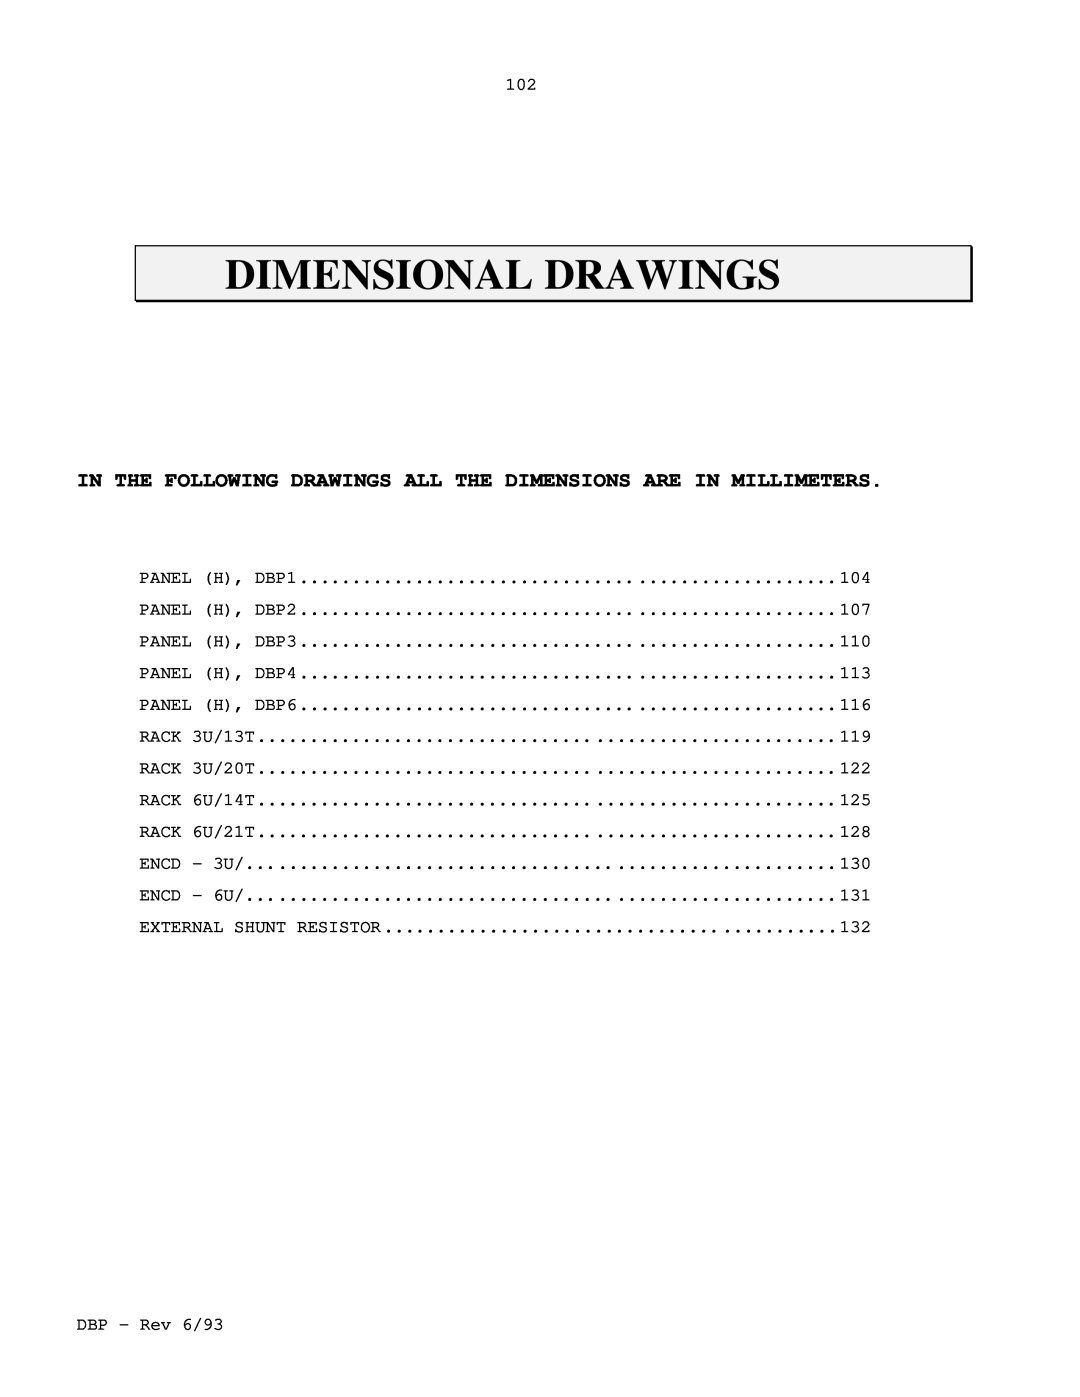 Elmo DBP SERIES manual Dimensional Drawings 